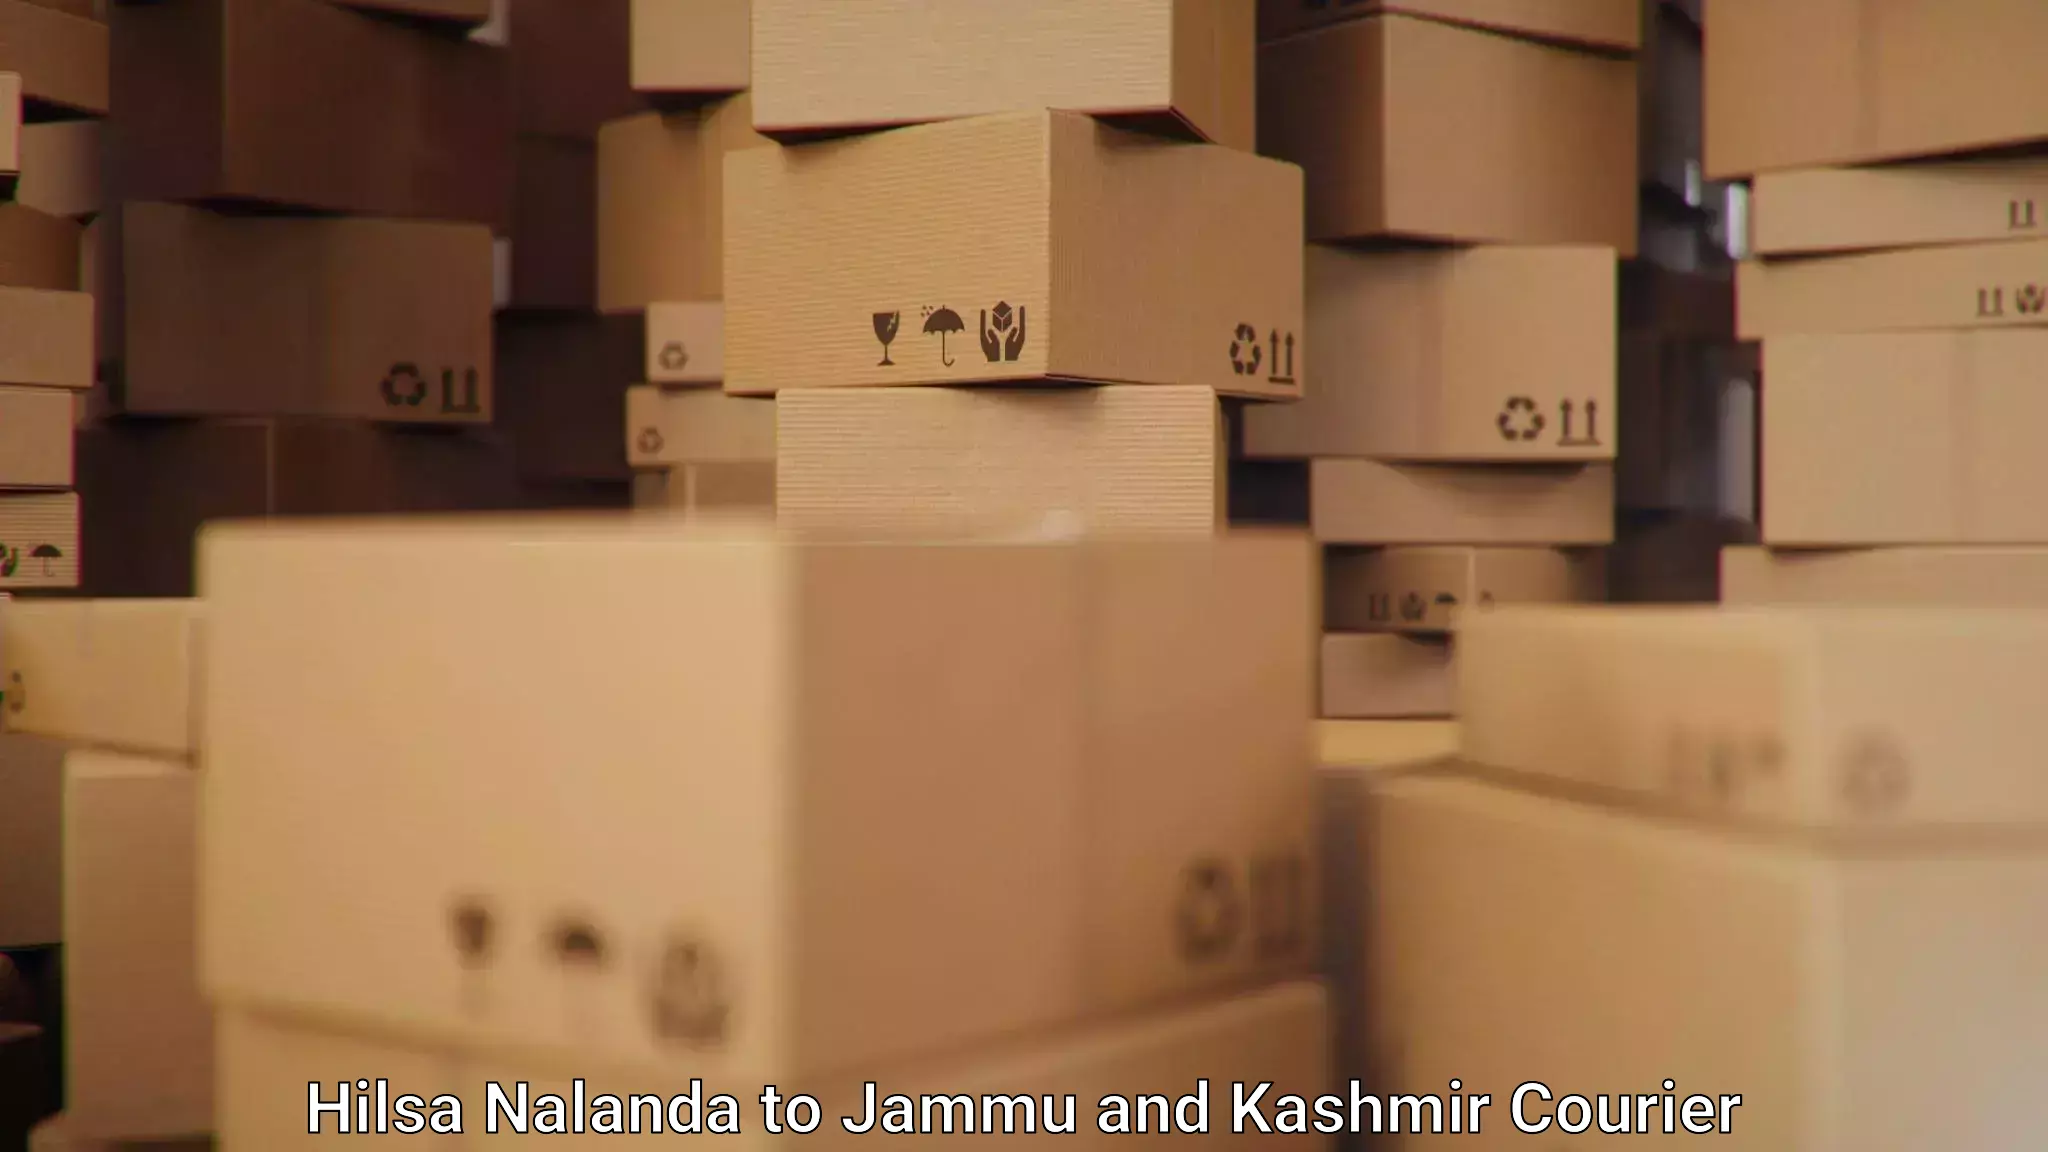 Courier service partnerships Hilsa Nalanda to Jammu and Kashmir